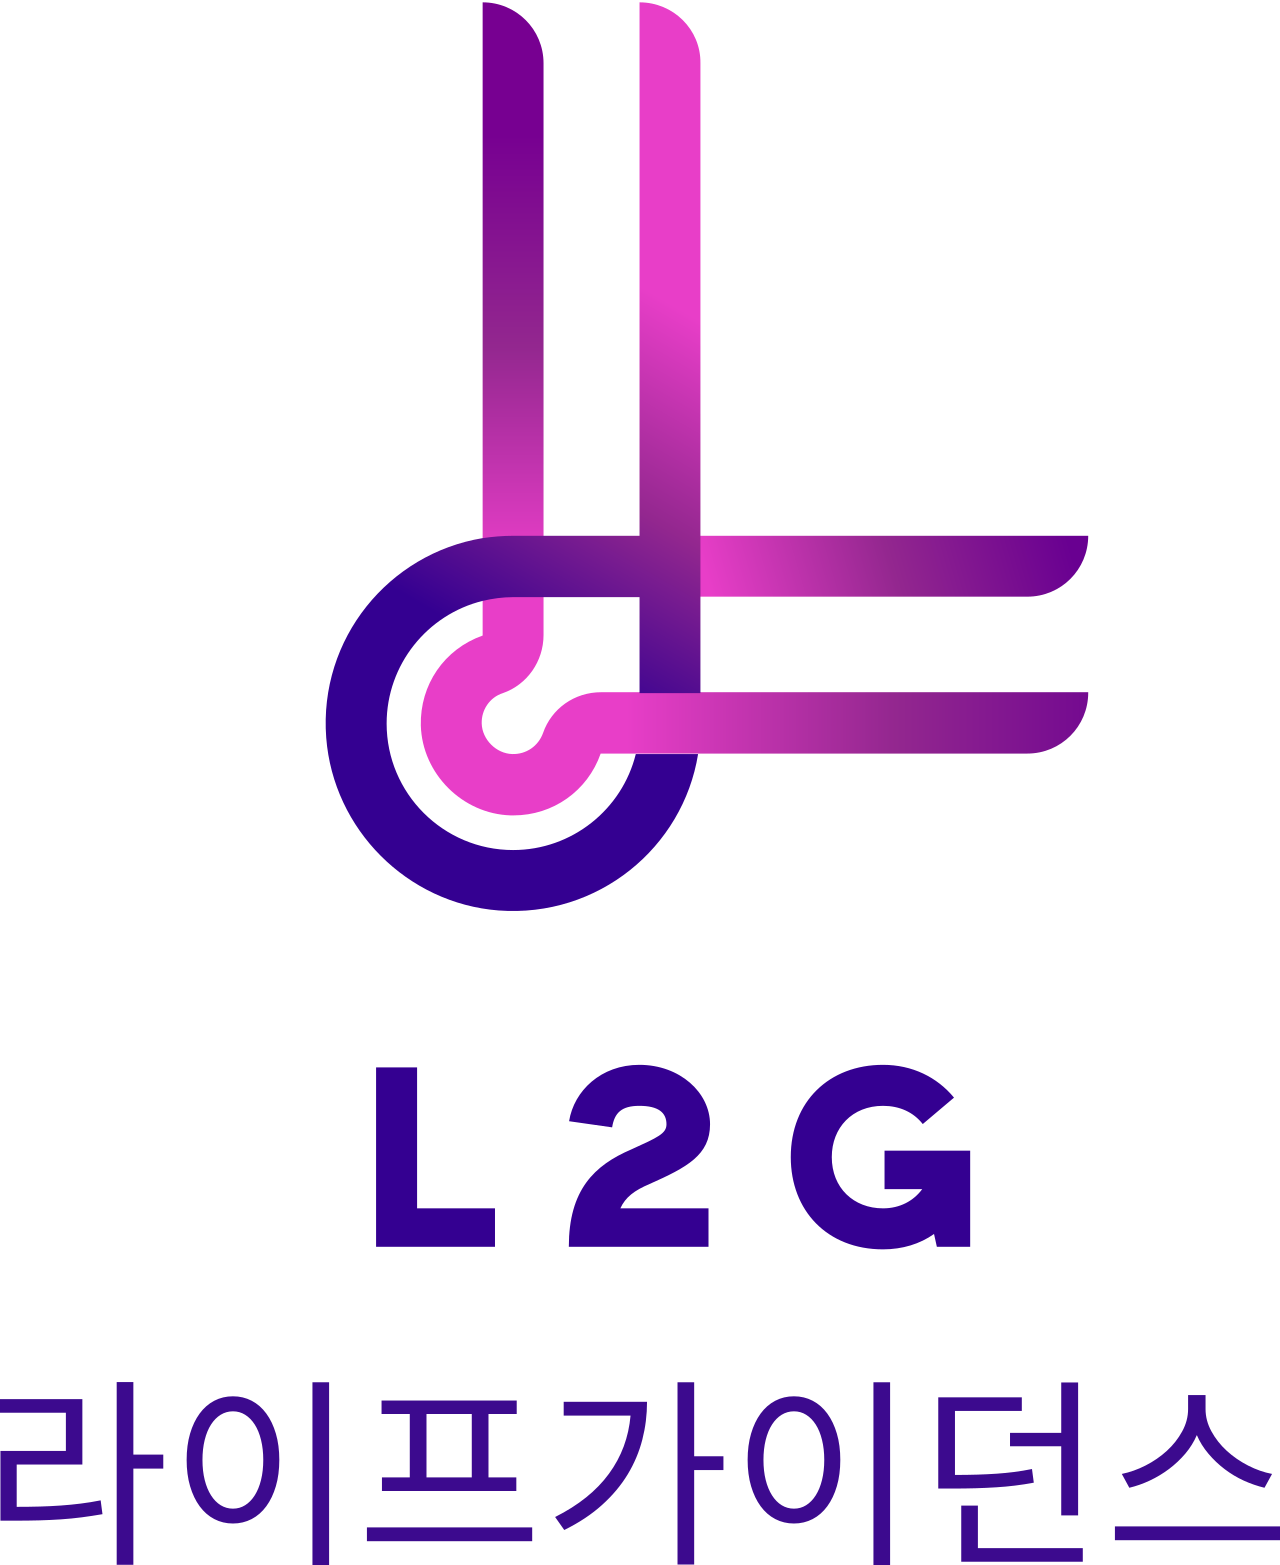 L2G's web page